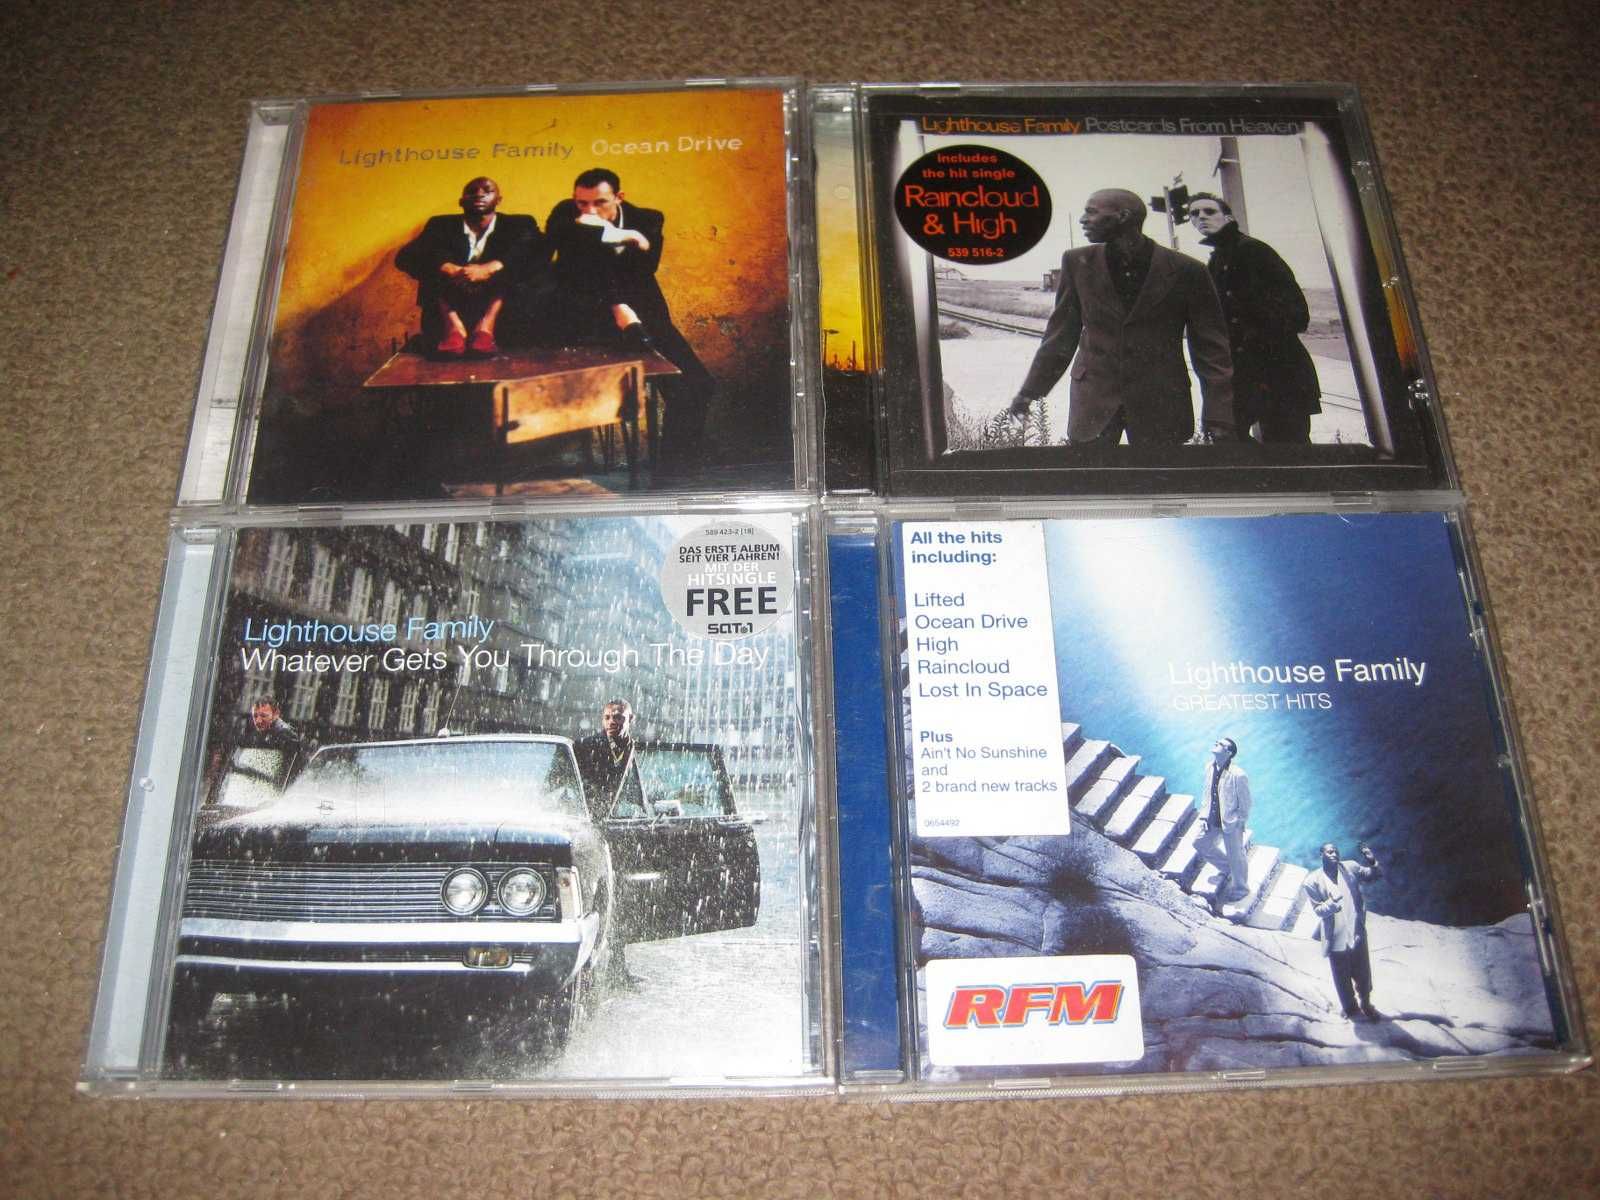 4 CDs dos "Lighthouse Family" Portes Grátis!